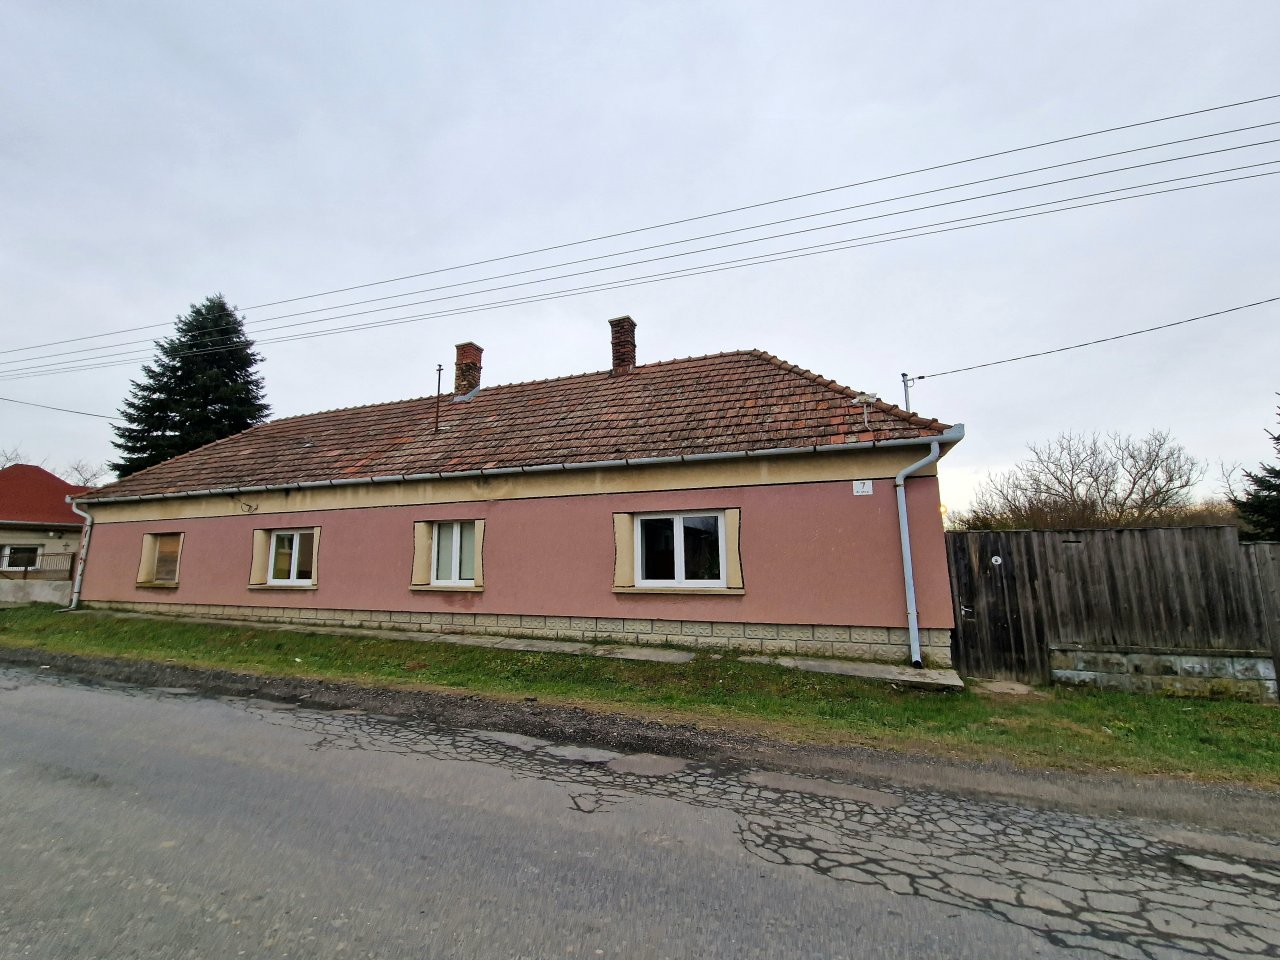 Bauernhaus in Ungarn-